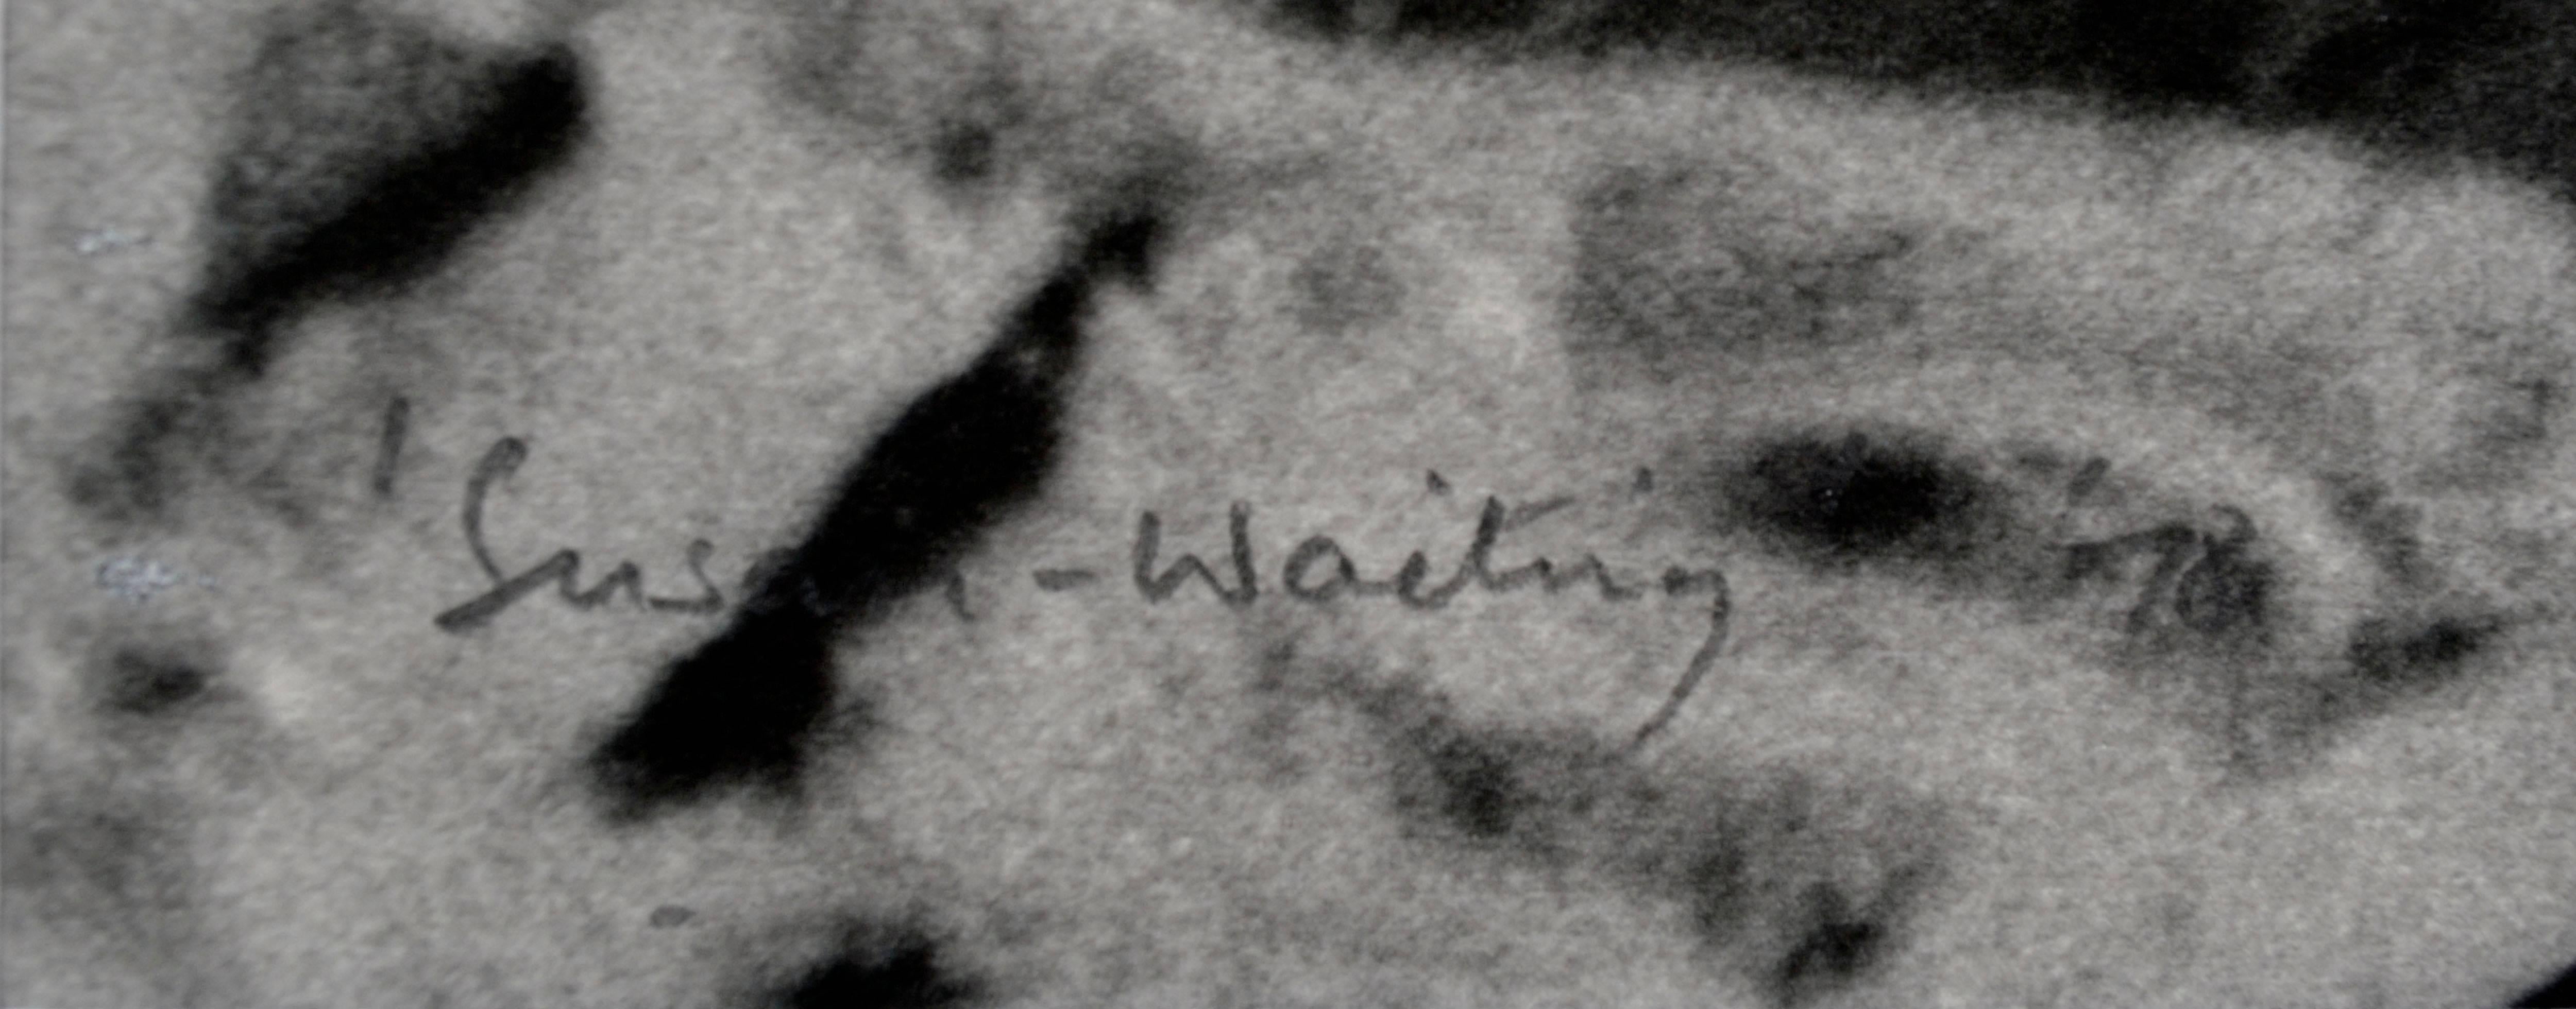 „Susan – Waiting '78“ –  Figurative Schwarz-Weiß-Fotografie, 13/25 (Grau), Black and White Photograph, von Graham Nash